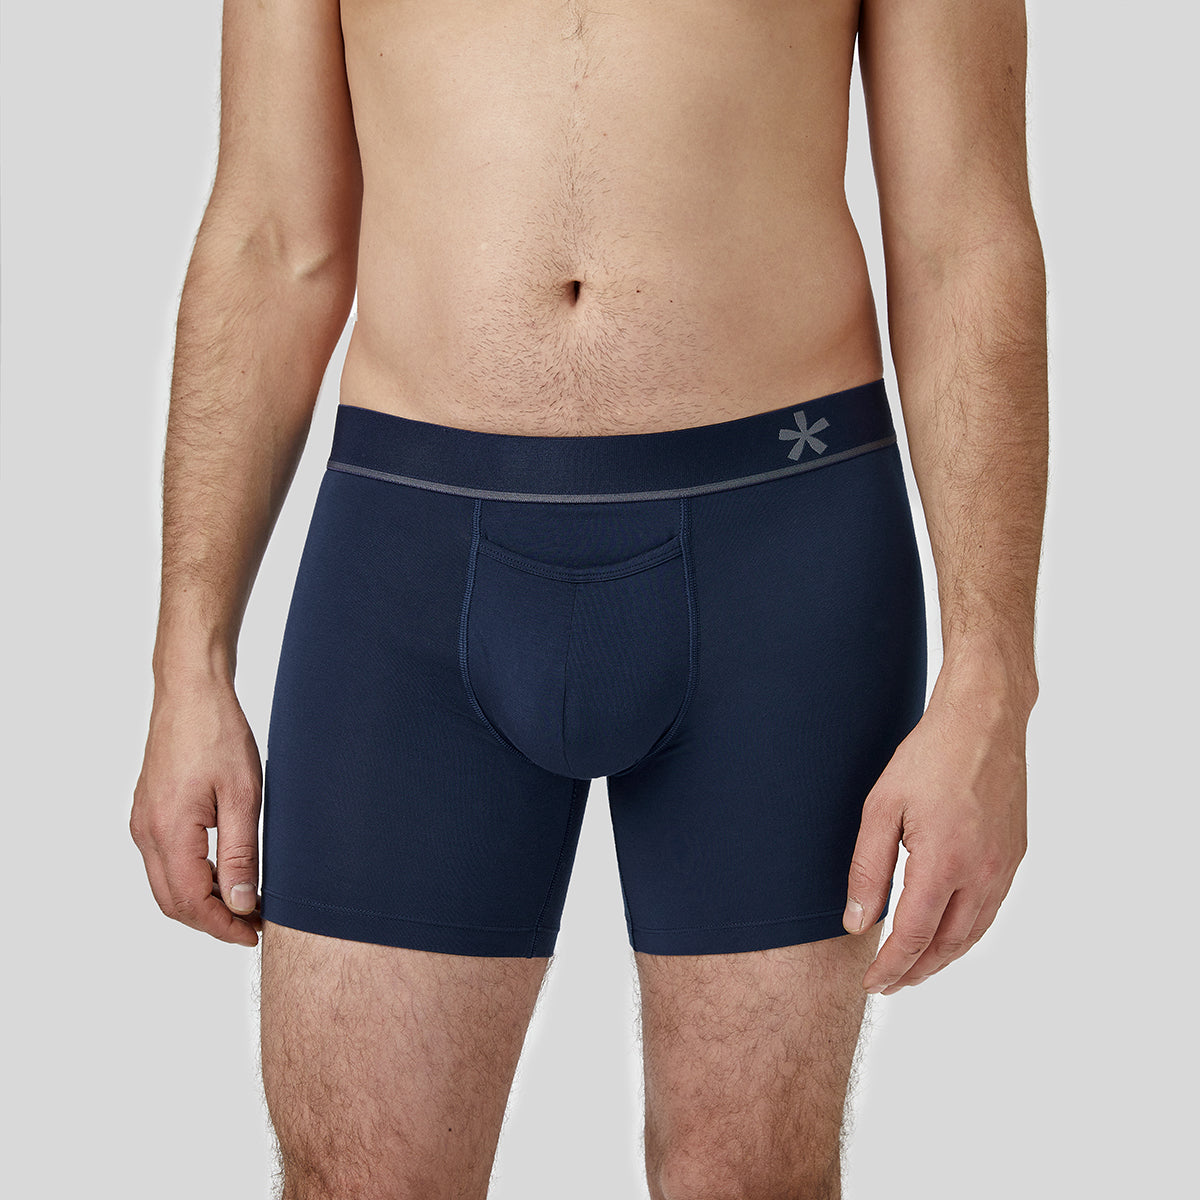 Review – Swimming Briefs by Box Menswear – Underwear News Briefs